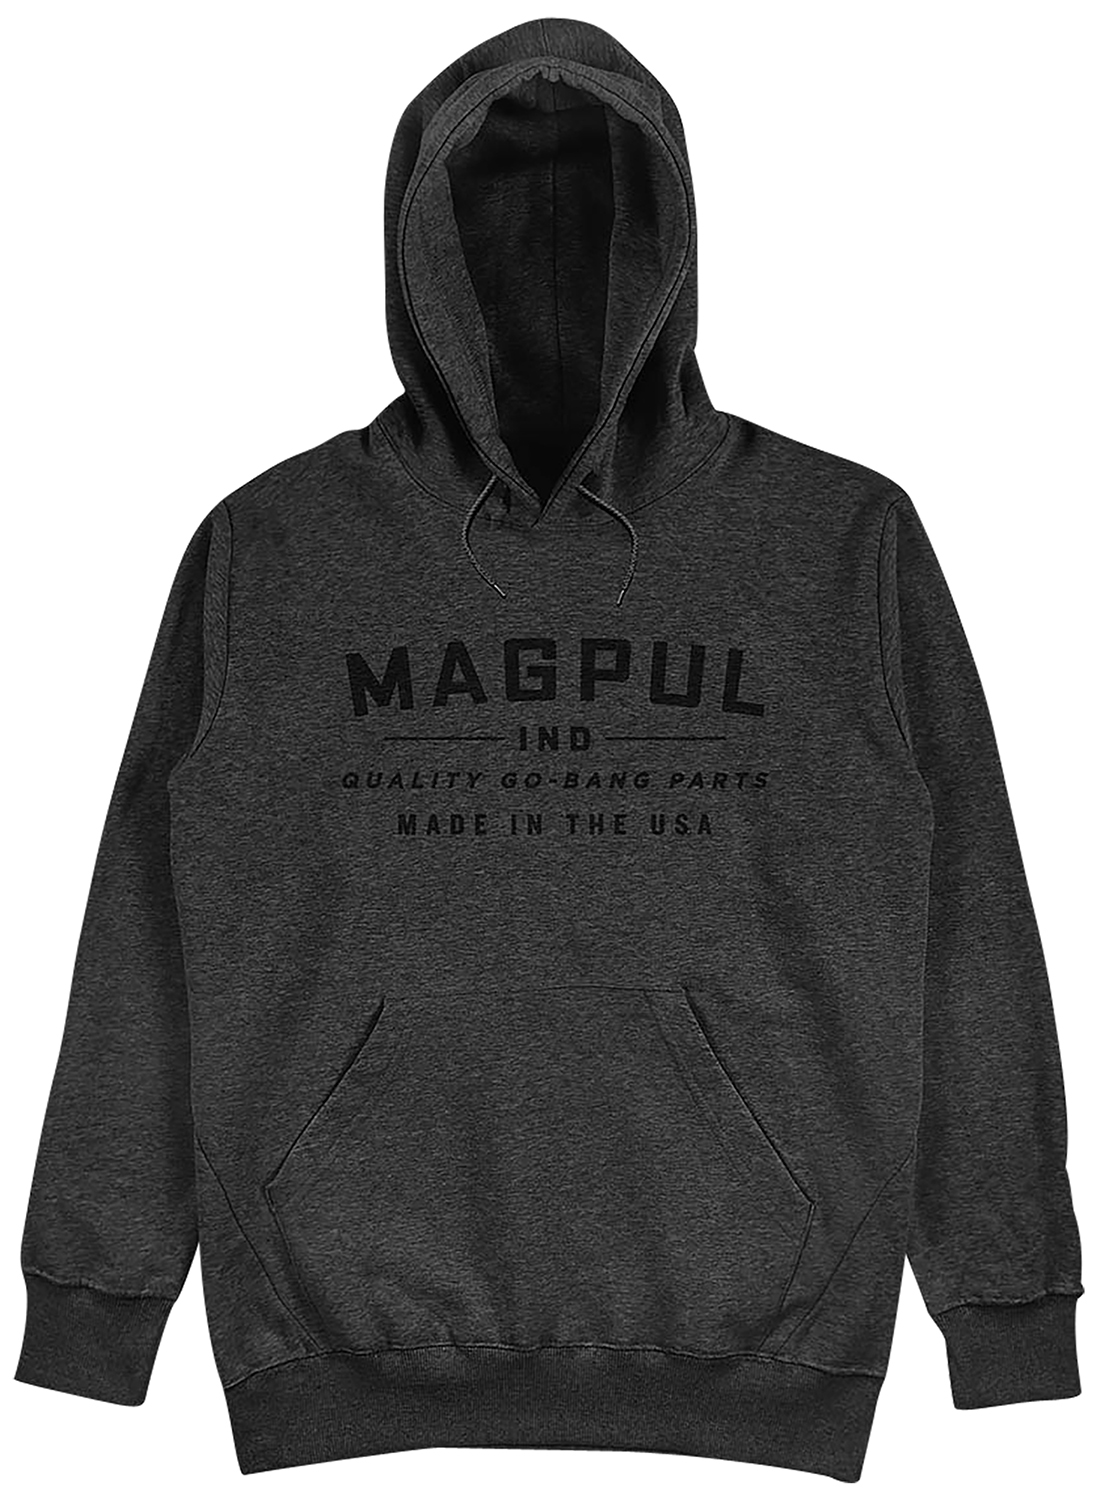 Magpul MAG1256-011-M Go Bang Parts  Charcoal Heather Long Sleeve Medium